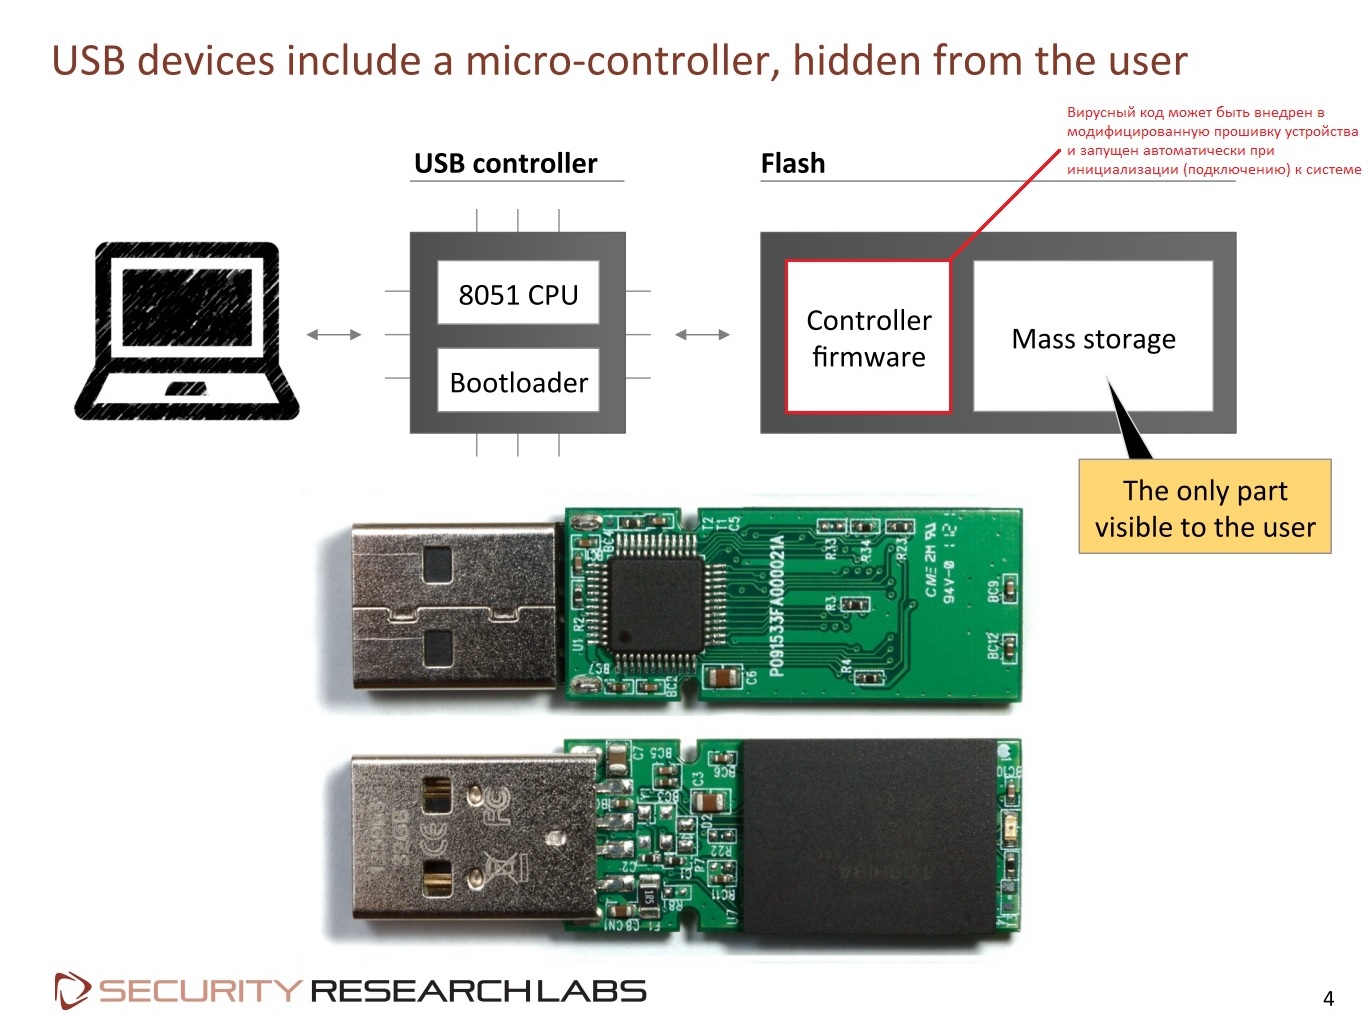 guvenlik  BadUSB: USBden bağlanan cihazların hepsi bir tehdit kaynağı olabilir